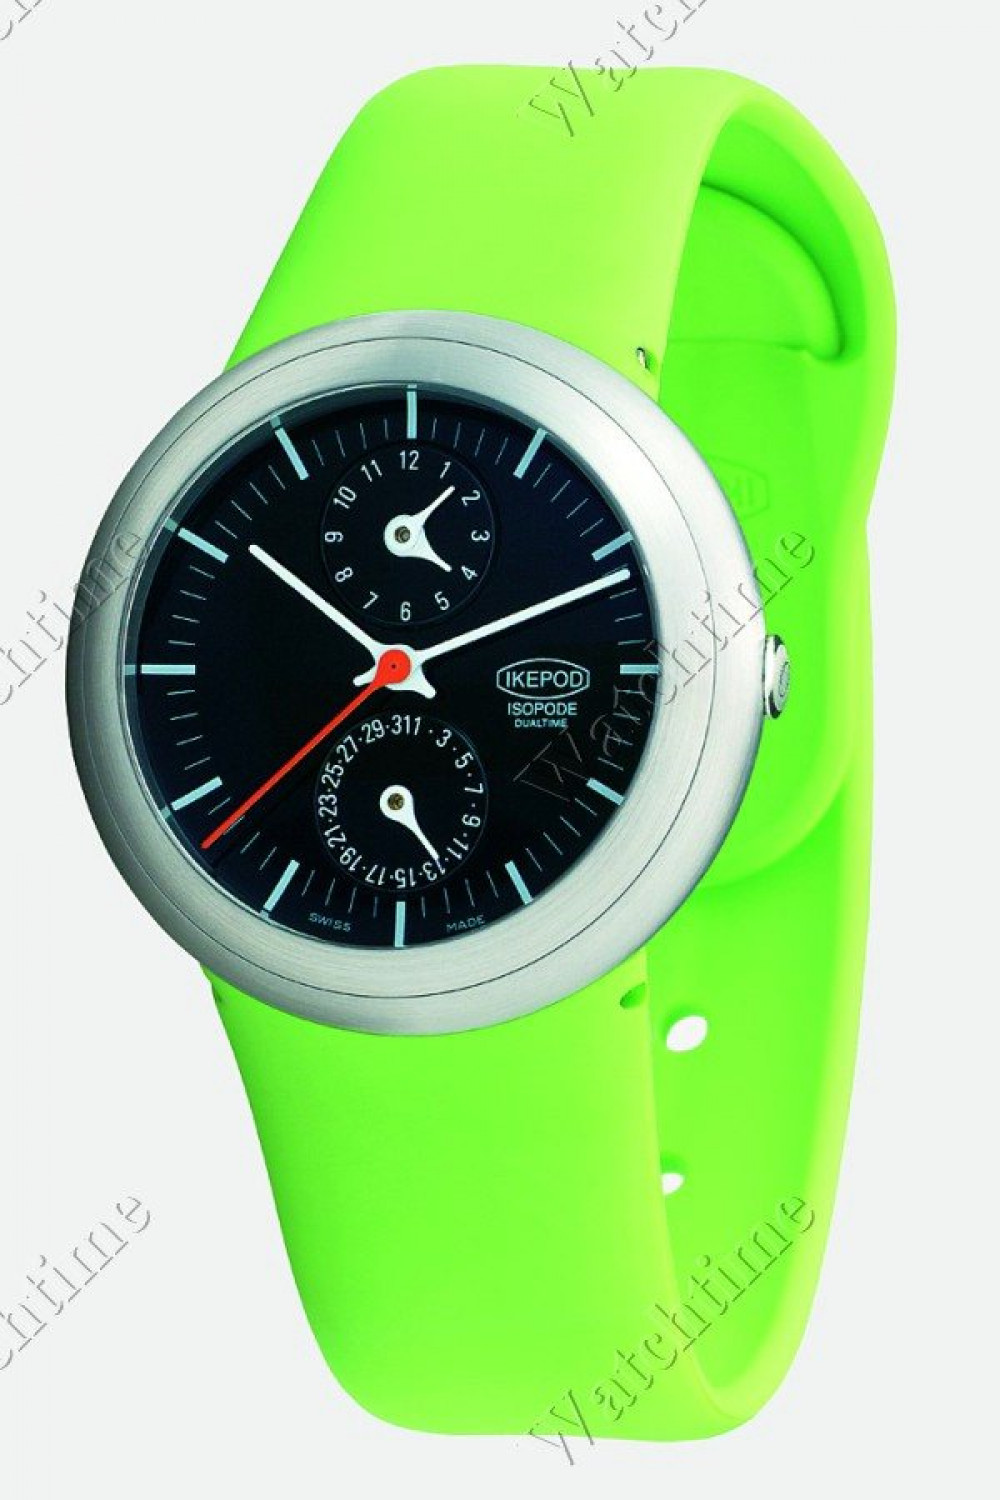 Zegarek firmy Ikepod, model Isopode Dual Time